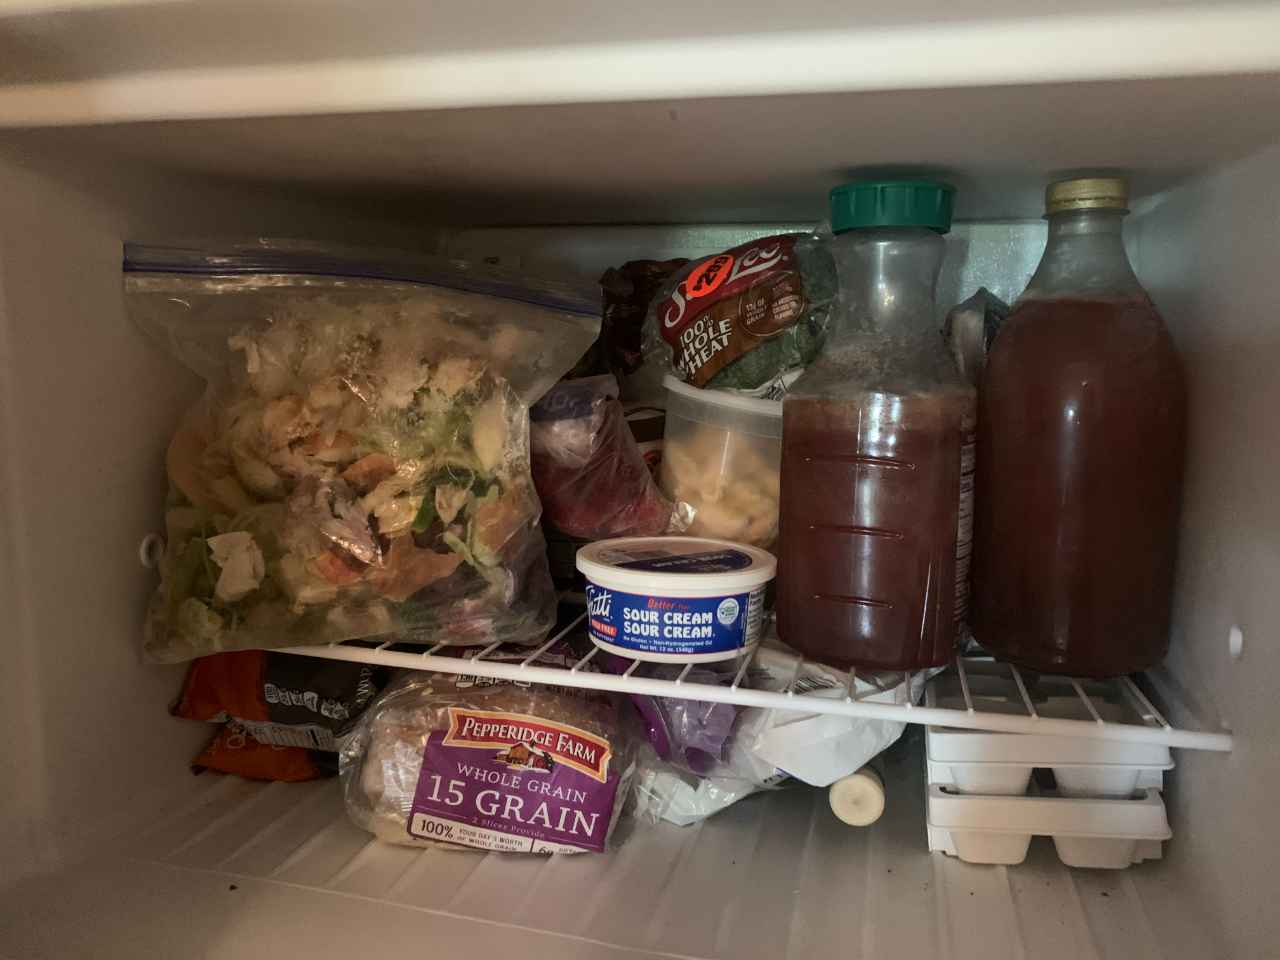 Food scraps in the freezer